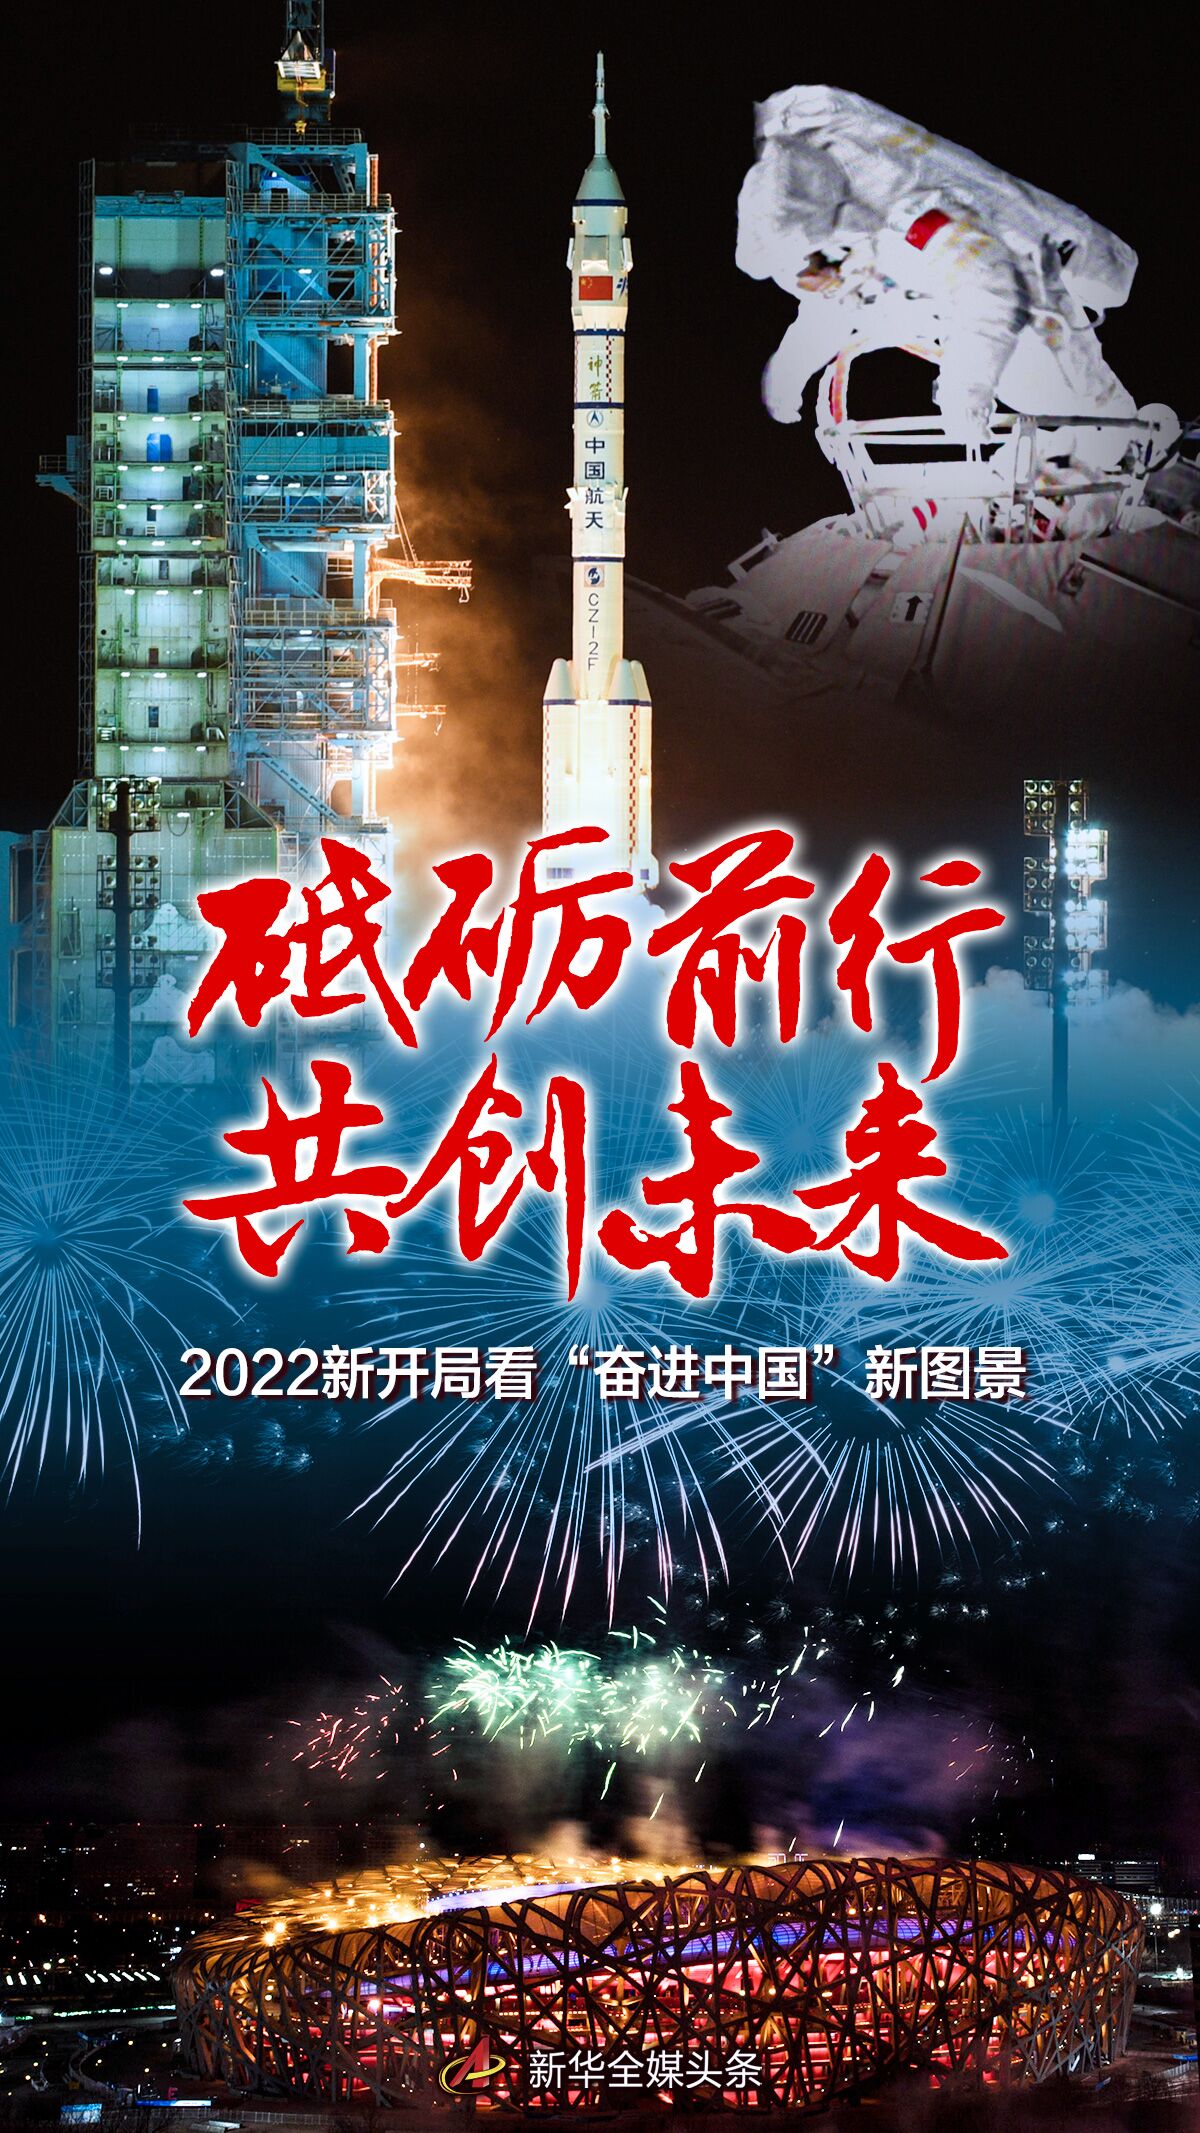 砥砺前行 共创未来——2022新开局看“奋进中国”新图景